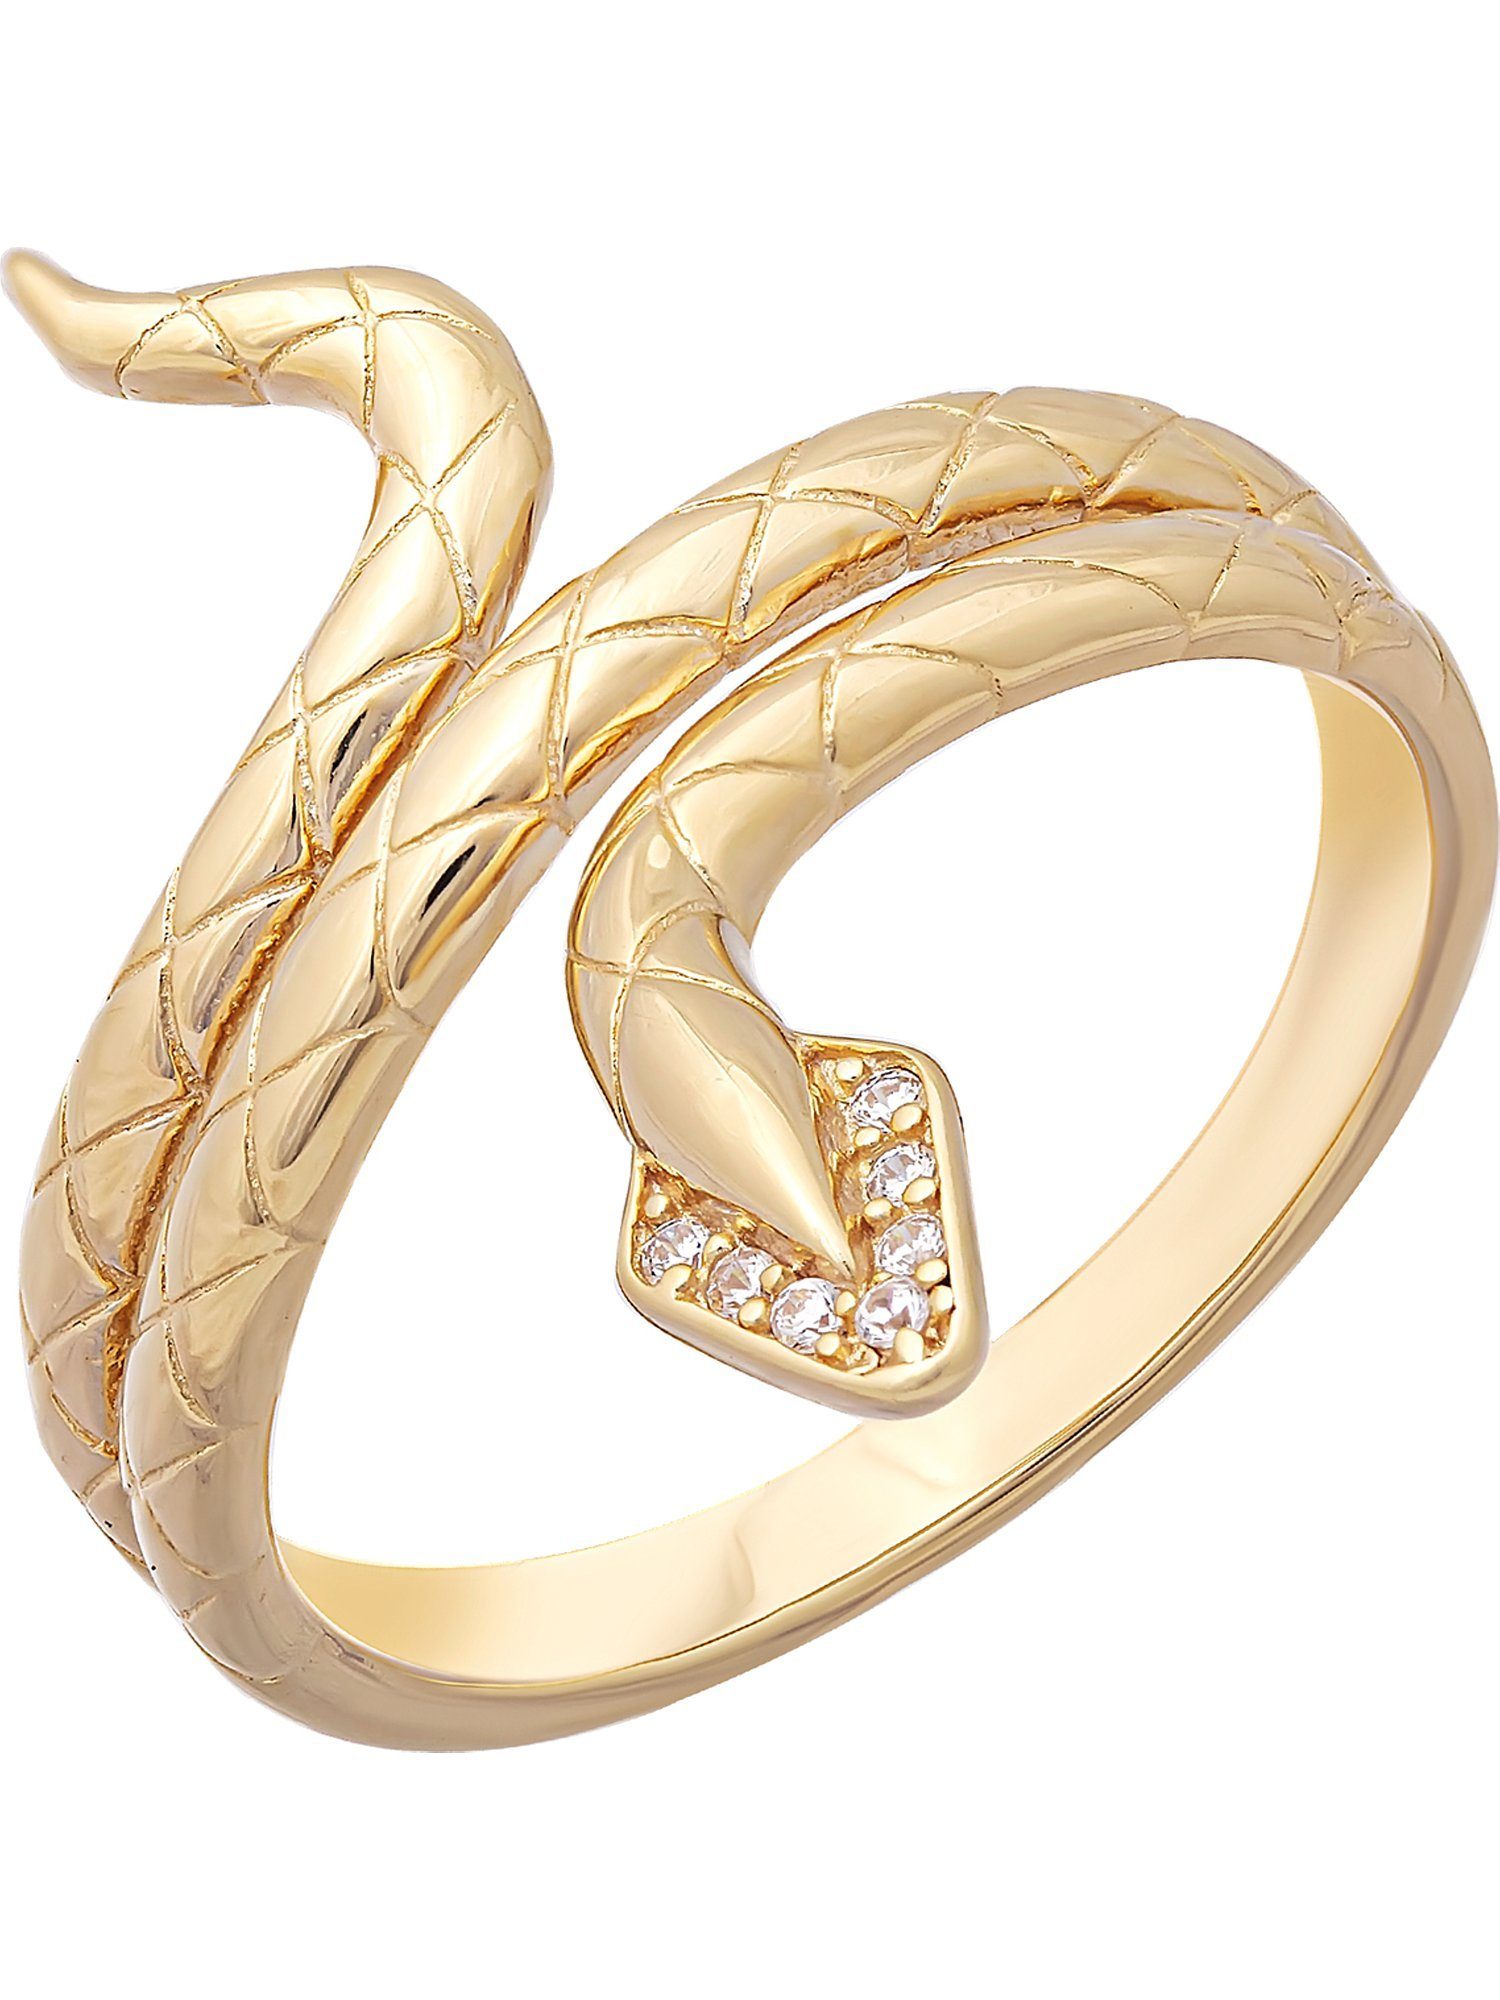 CAÏ Fingerring 925 für Zirkonia, Anlass mit edle vergoldet Schlange Silber ist Dieses jeden Accessoire